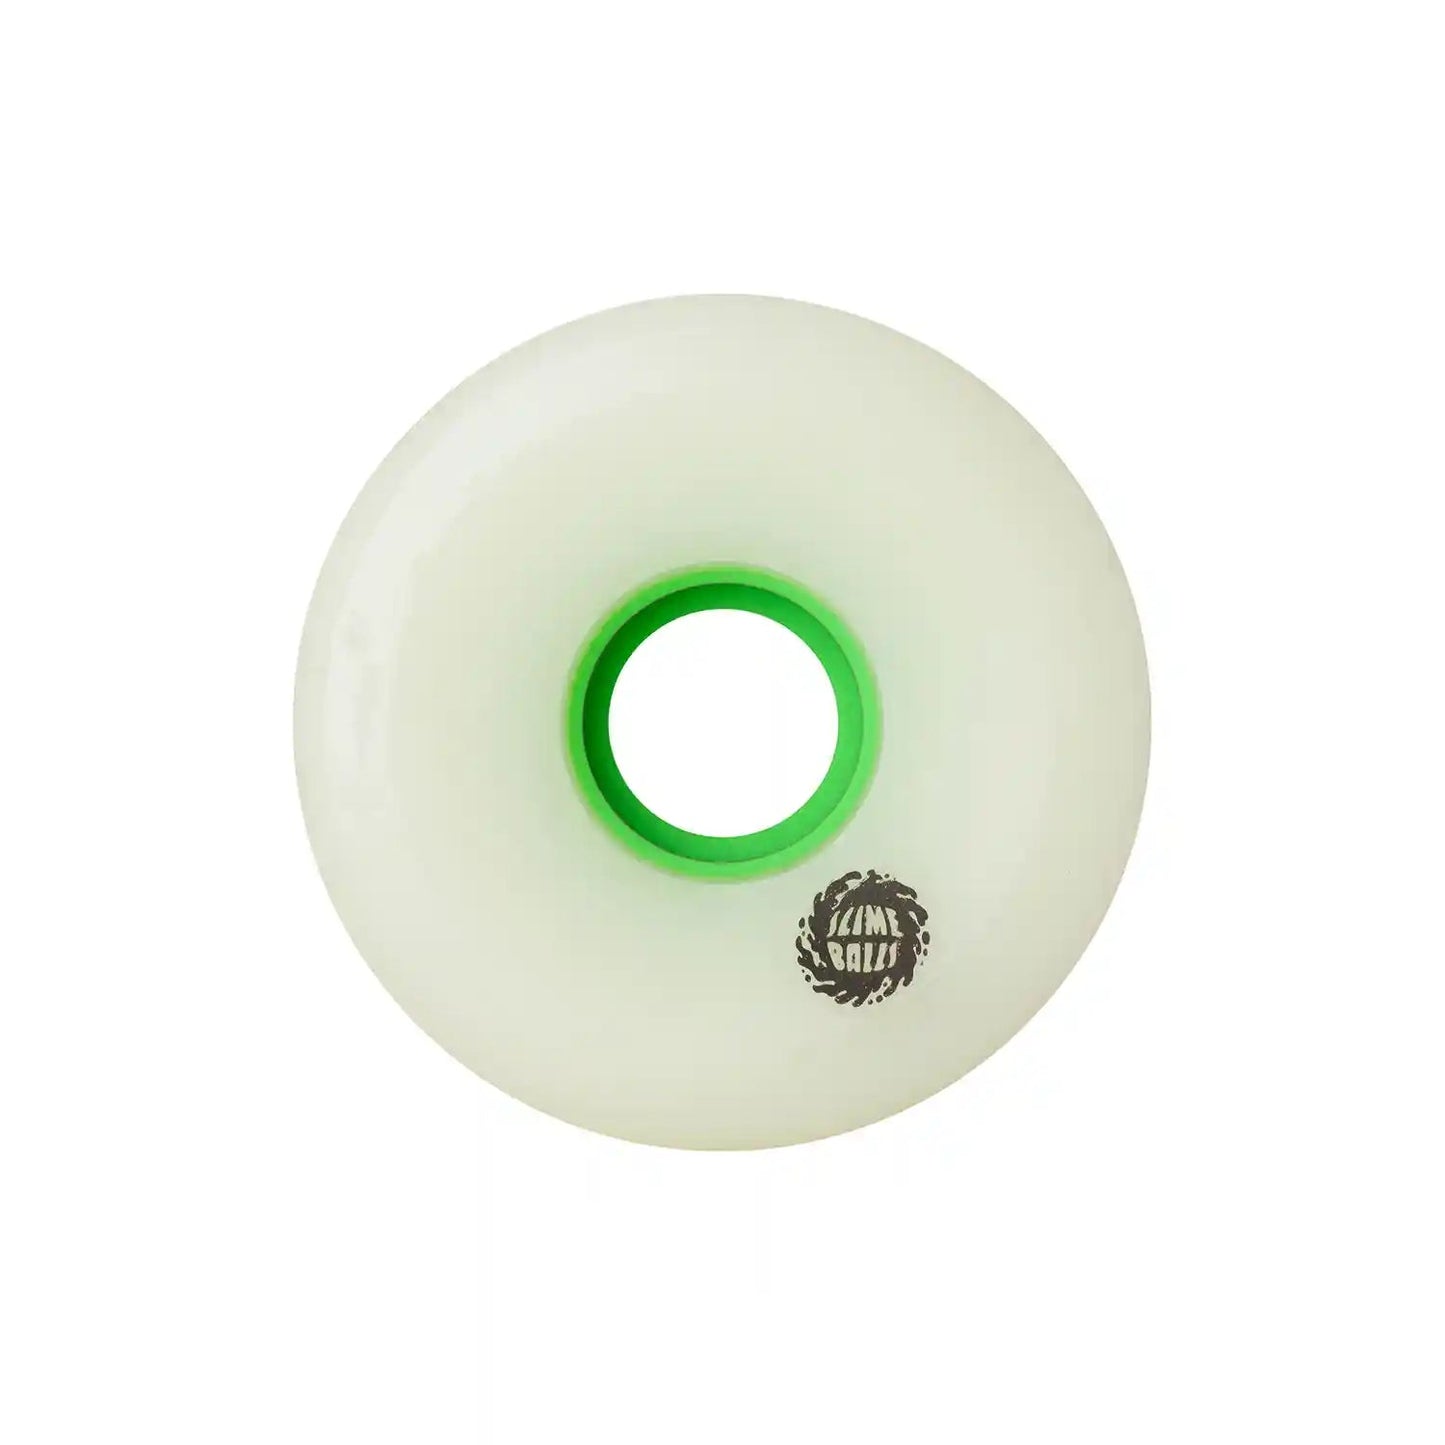 Slime Balls OG Slime Wheels White 78A (66mm) - Tiki Room Skateboards - 3